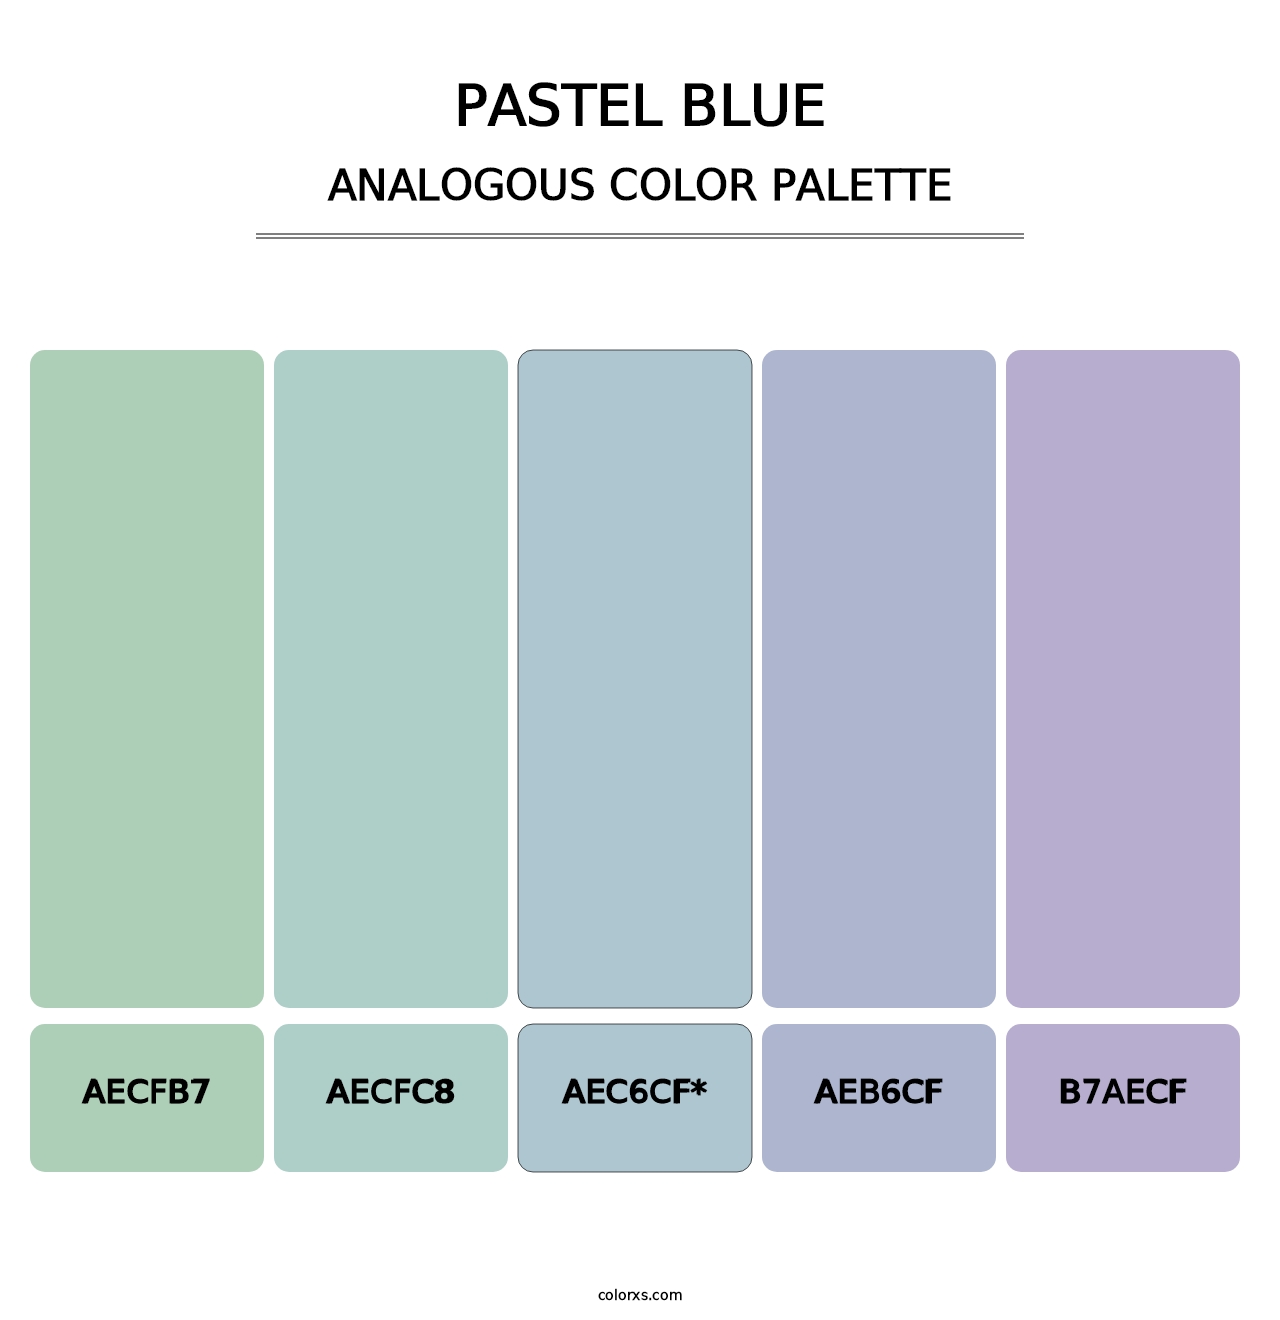 Pastel Blue - Analogous Color Palette